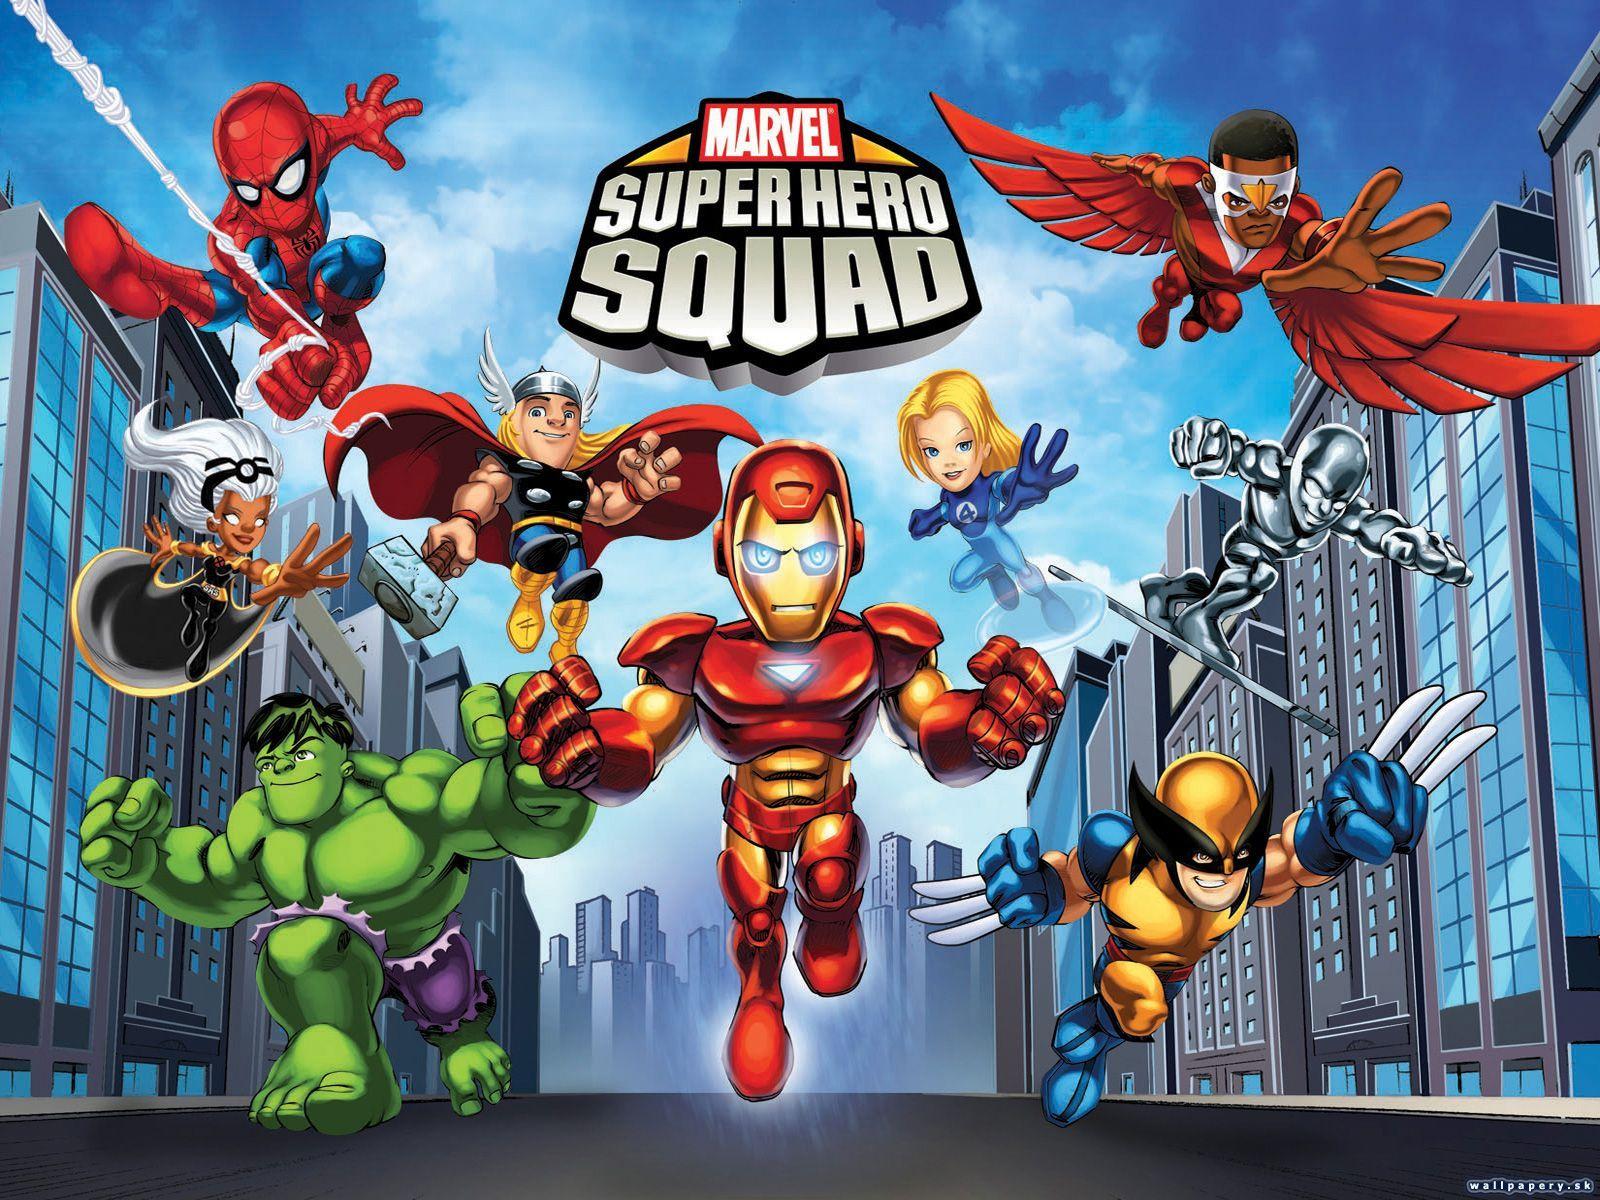 Superhero ABC Game. Marvel Super Hero Squad 1